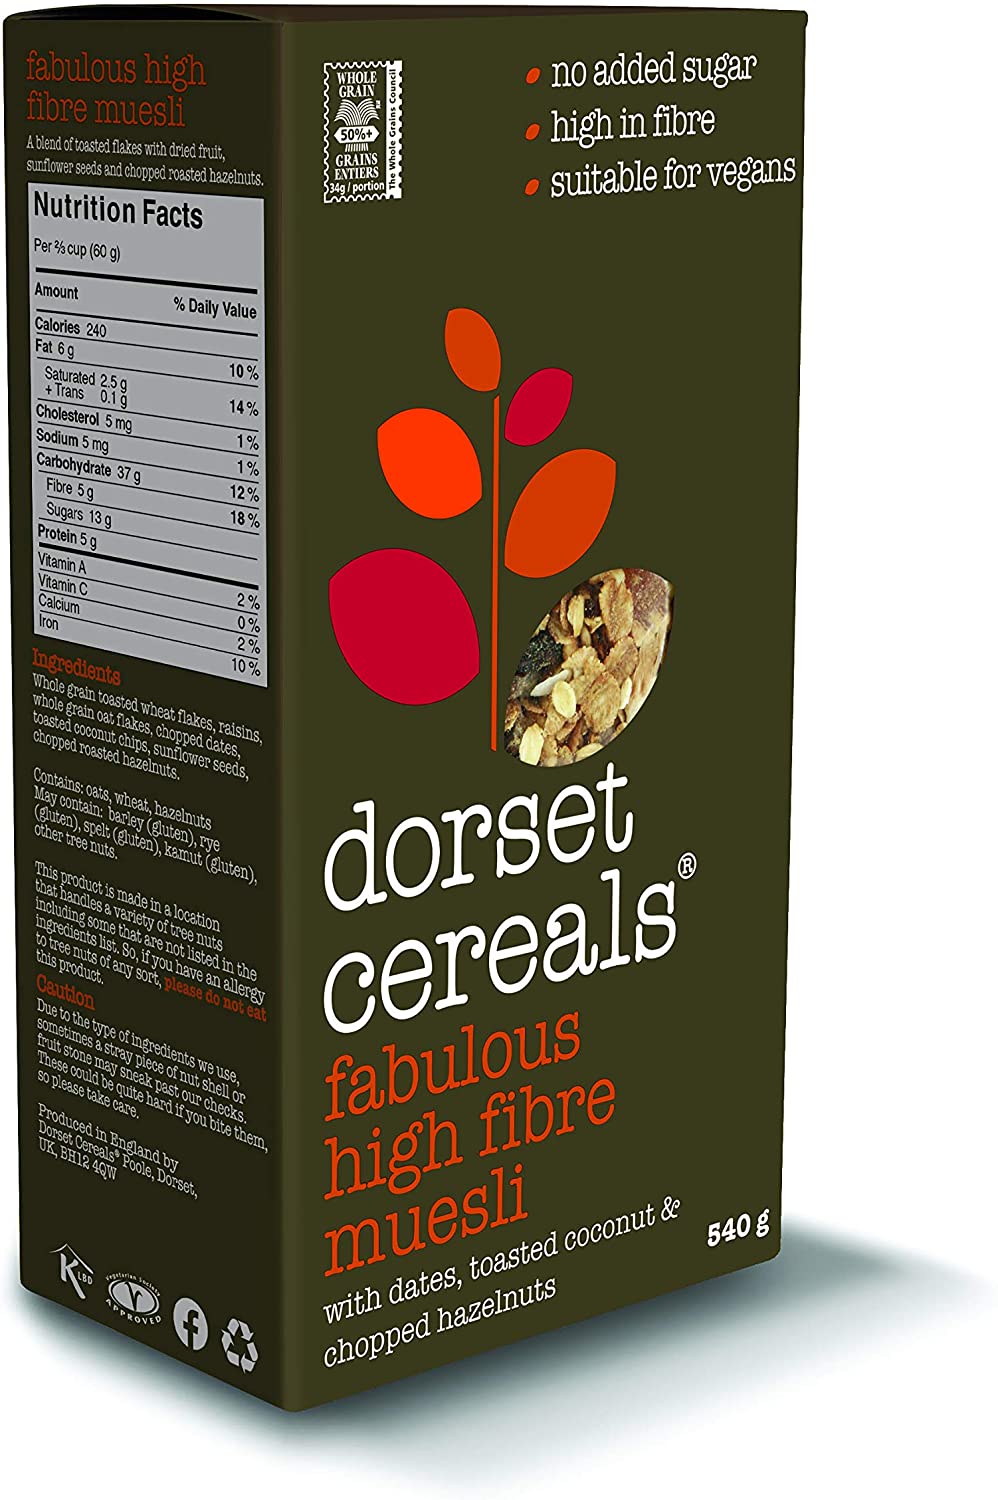 Dorset Cereals Fabulous High Fibre Muesli 540g